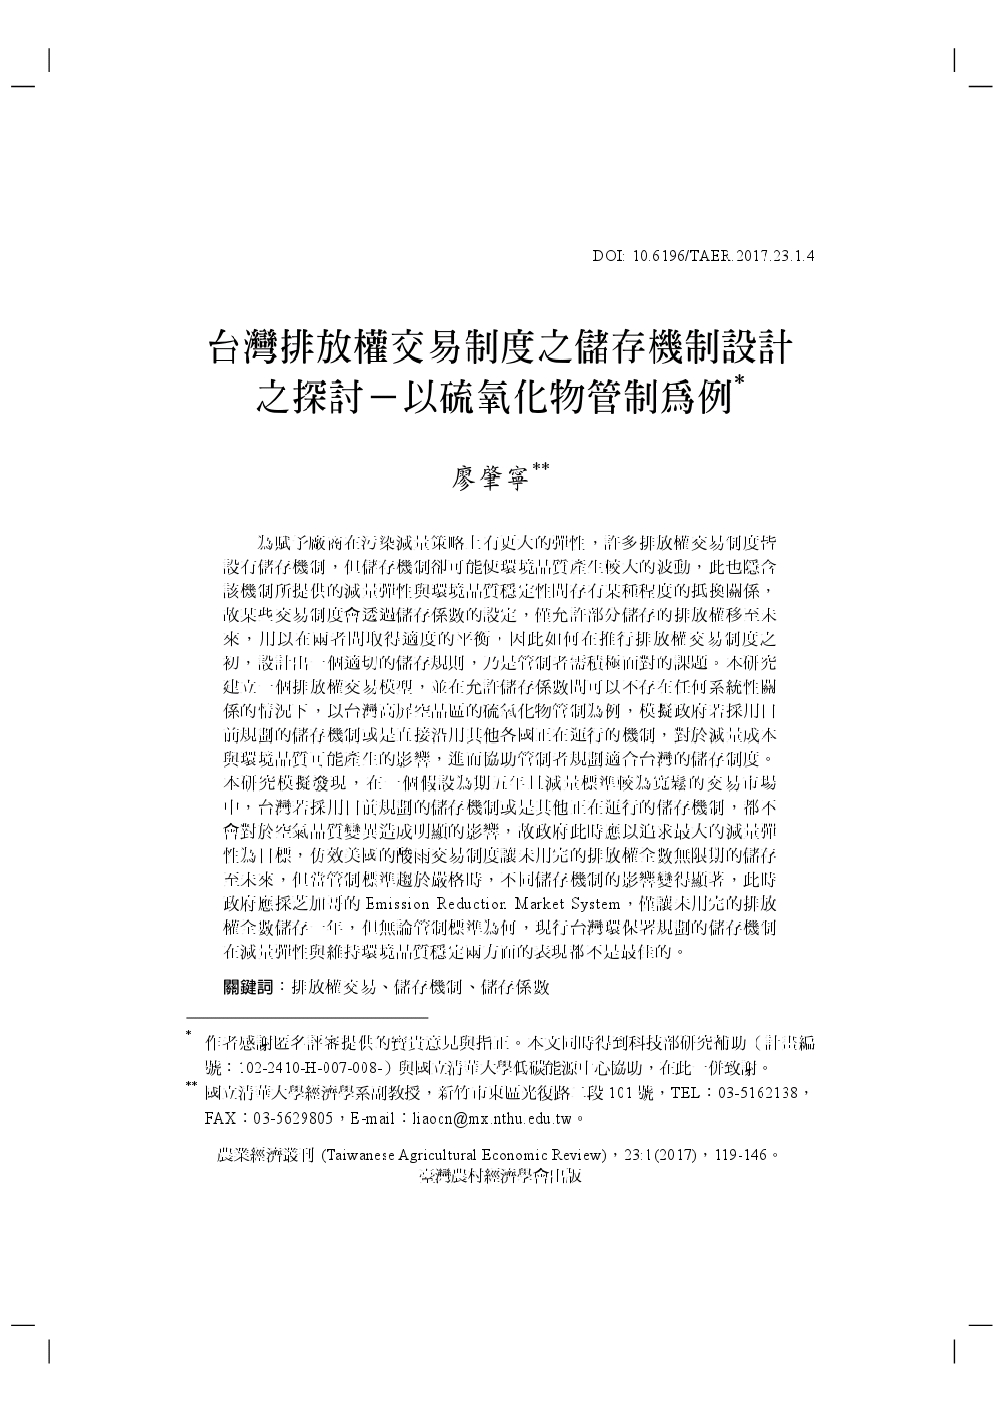 台灣排放權交易制度之儲存機制設計之探討_以硫氧化物管制為例.jpg